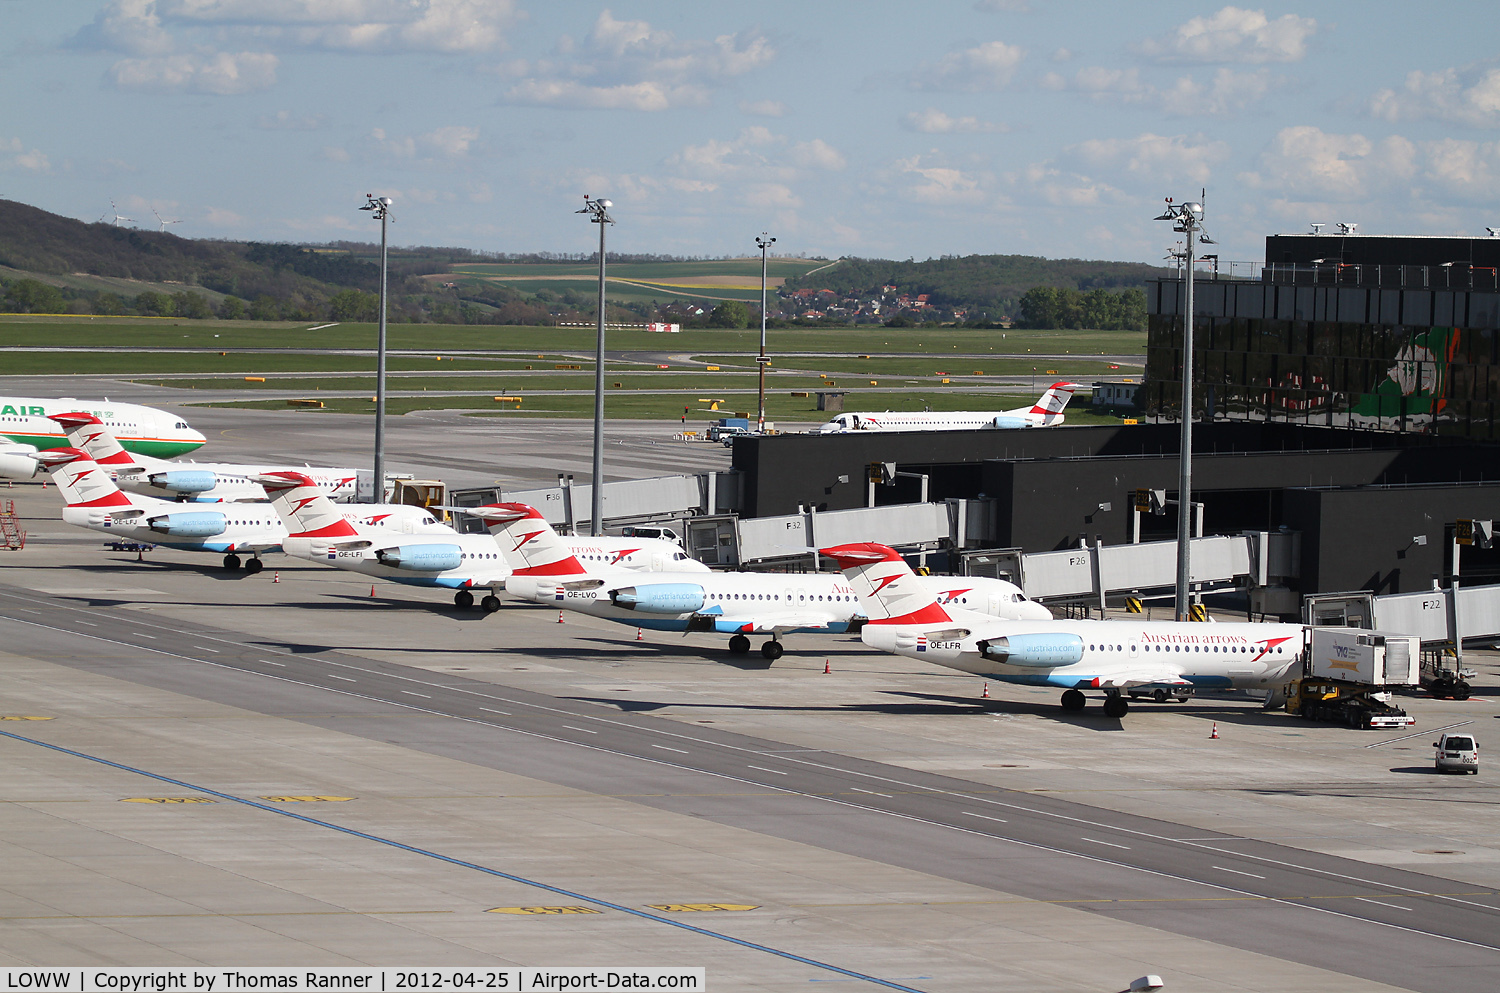 Vienna International Airport, Vienna Austria (LOWW) - Austrian Arrows Fokkers